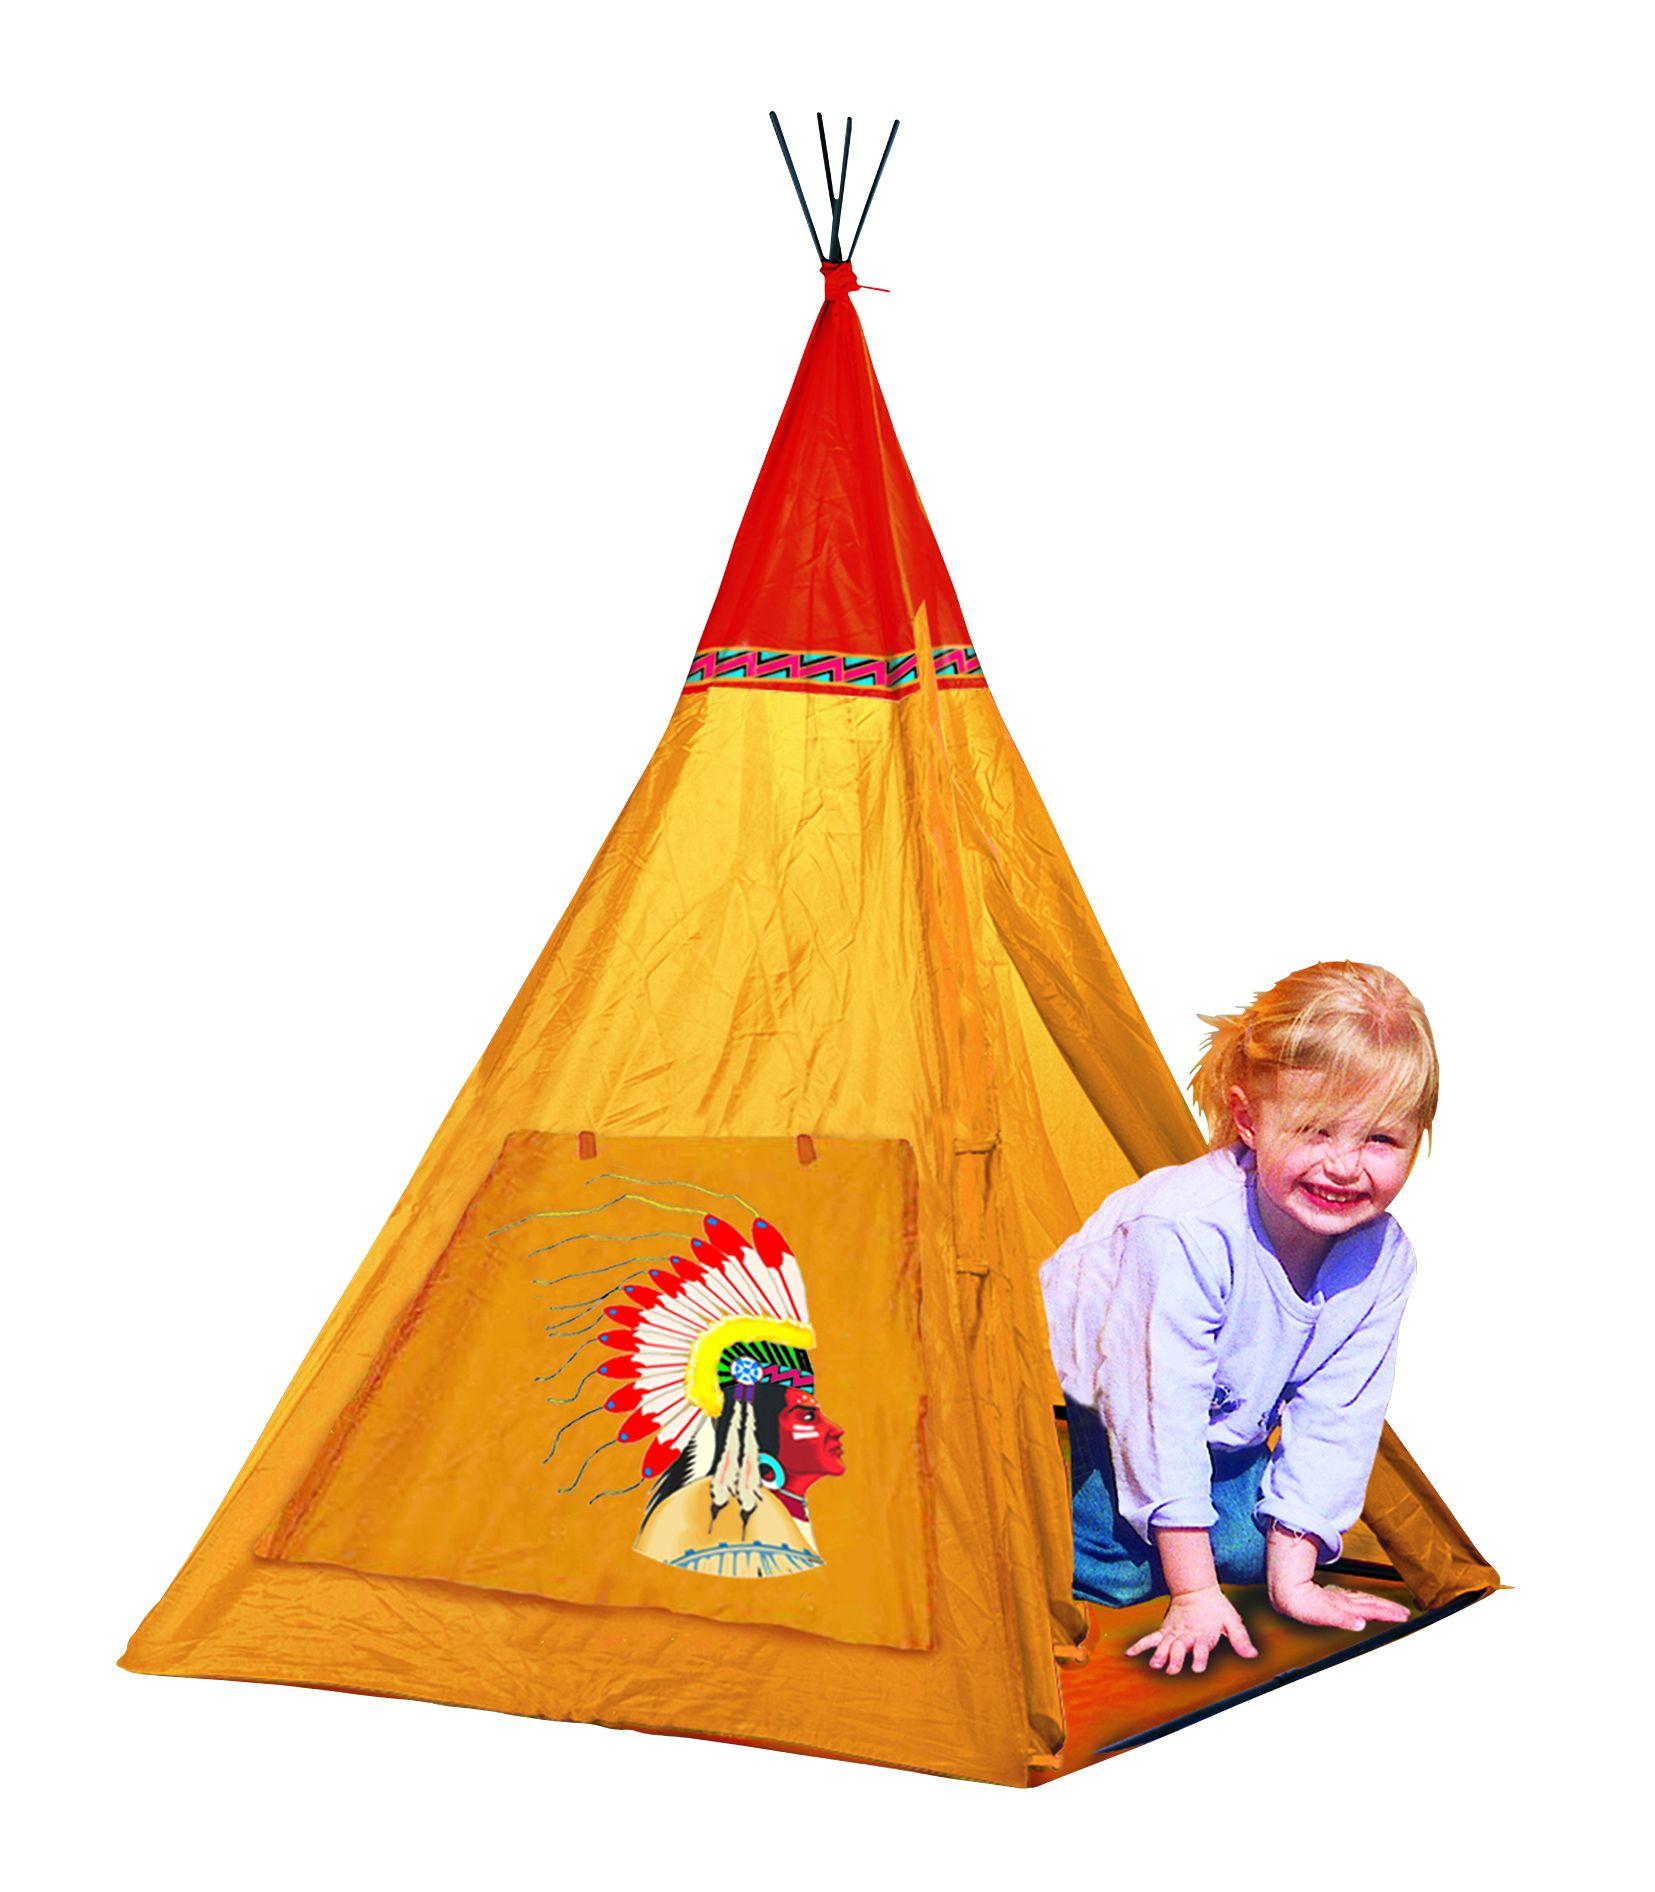 INDIAN III children's tent 100x100x135cm